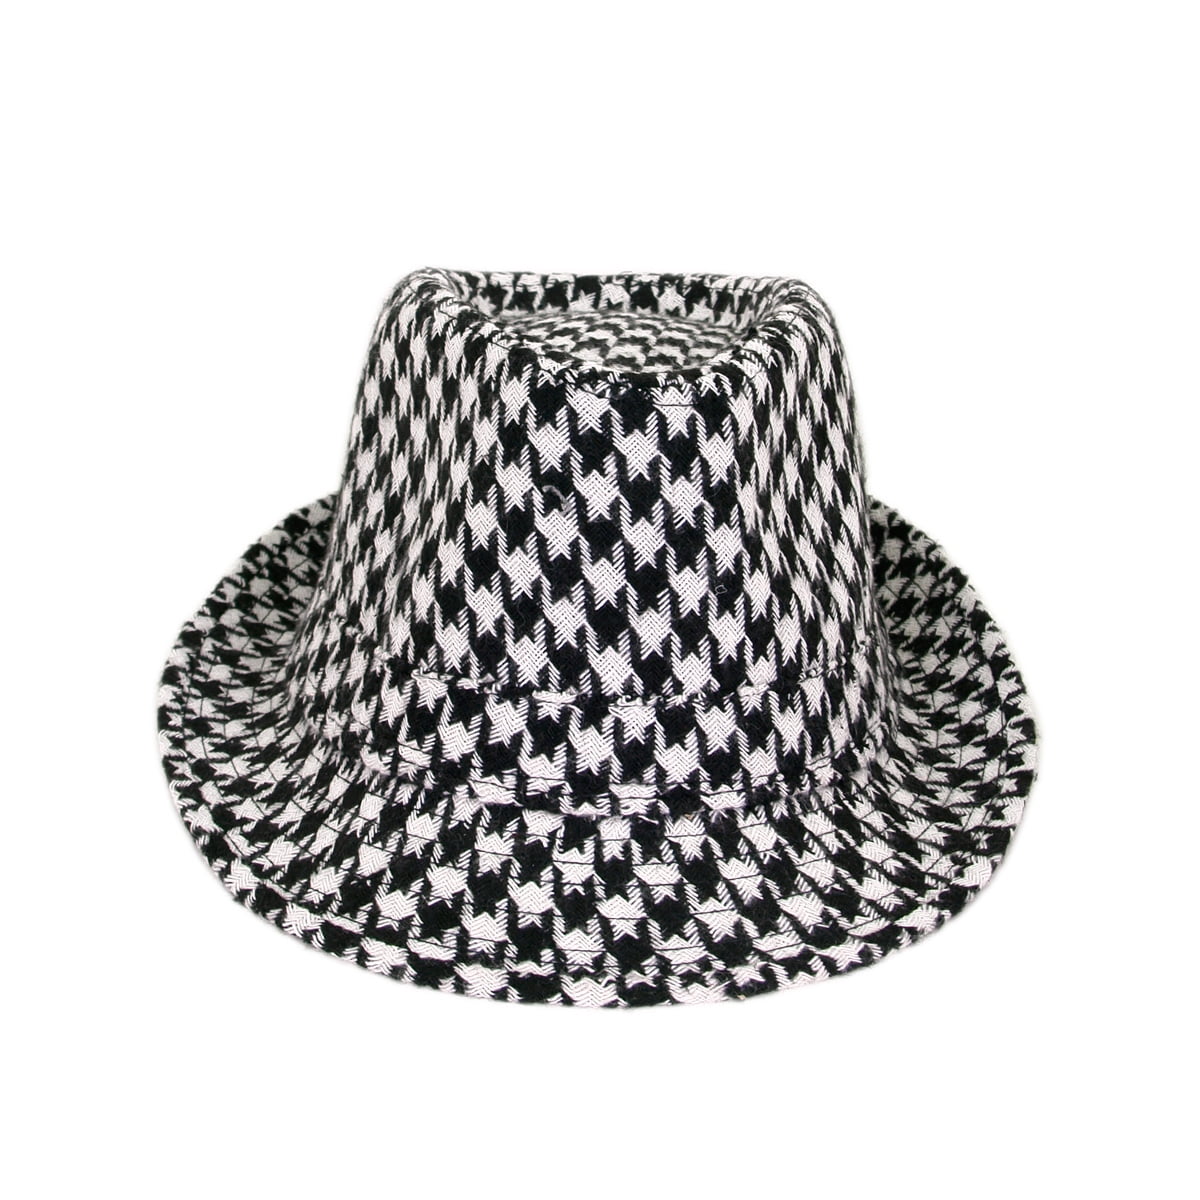 White & Black Basic Woven Fedora Hat Hats Size Large/XL